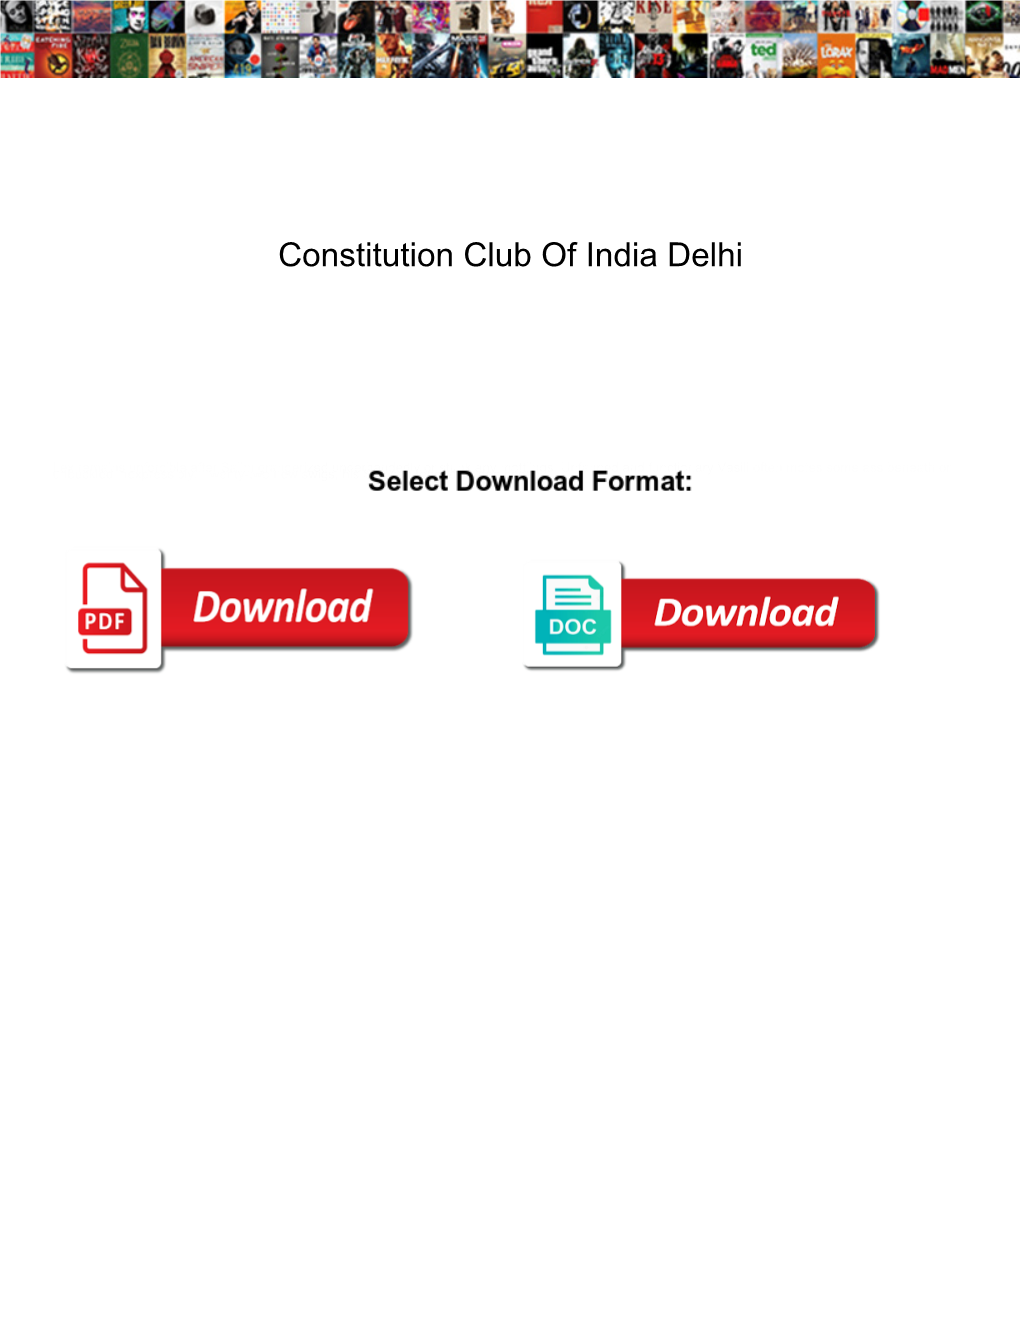 Constitution Club of India Delhi